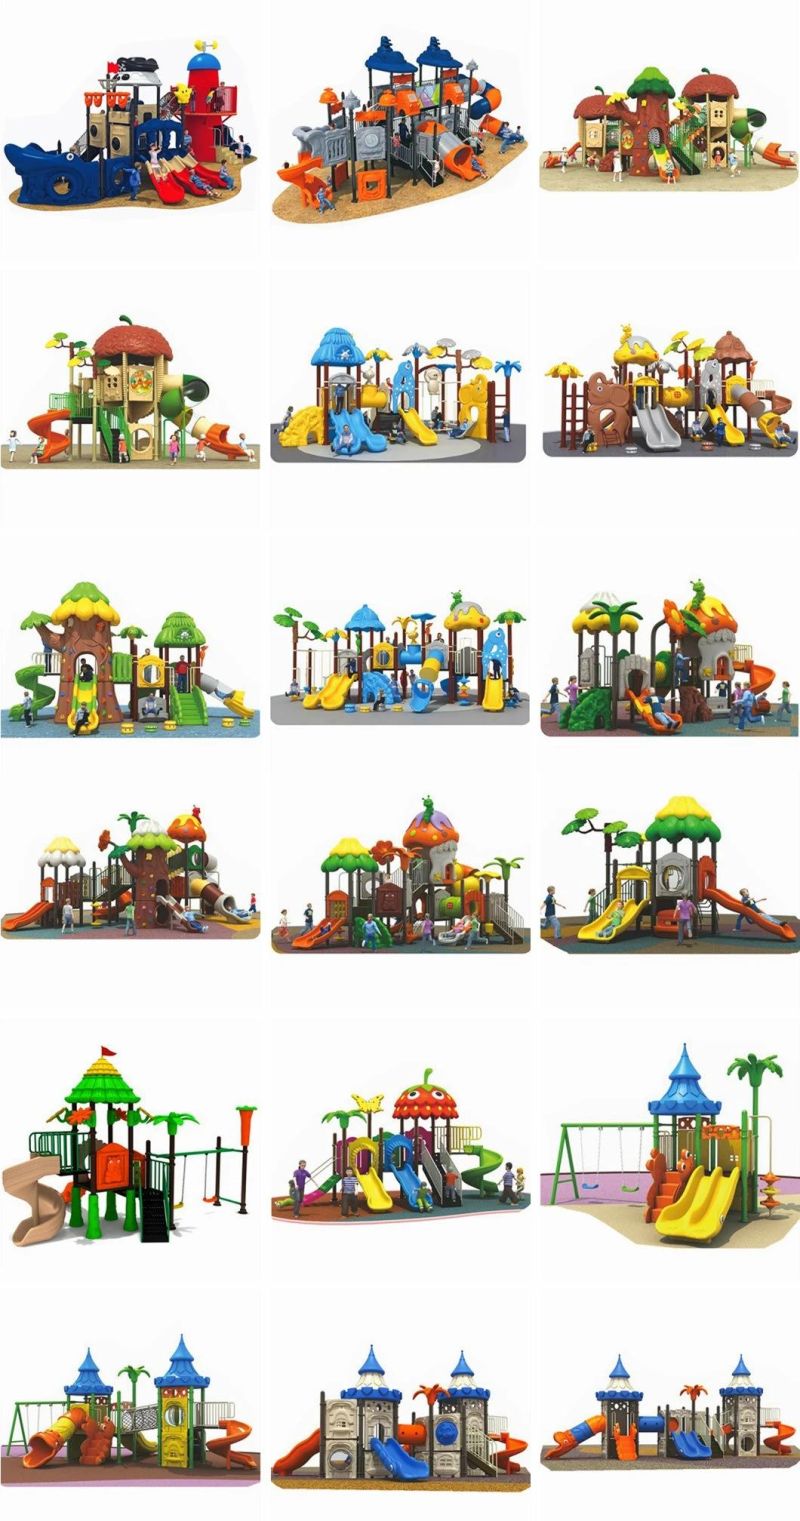 Customized Outdoor Children′s Playground Equipment Kids Amusement Park Slides